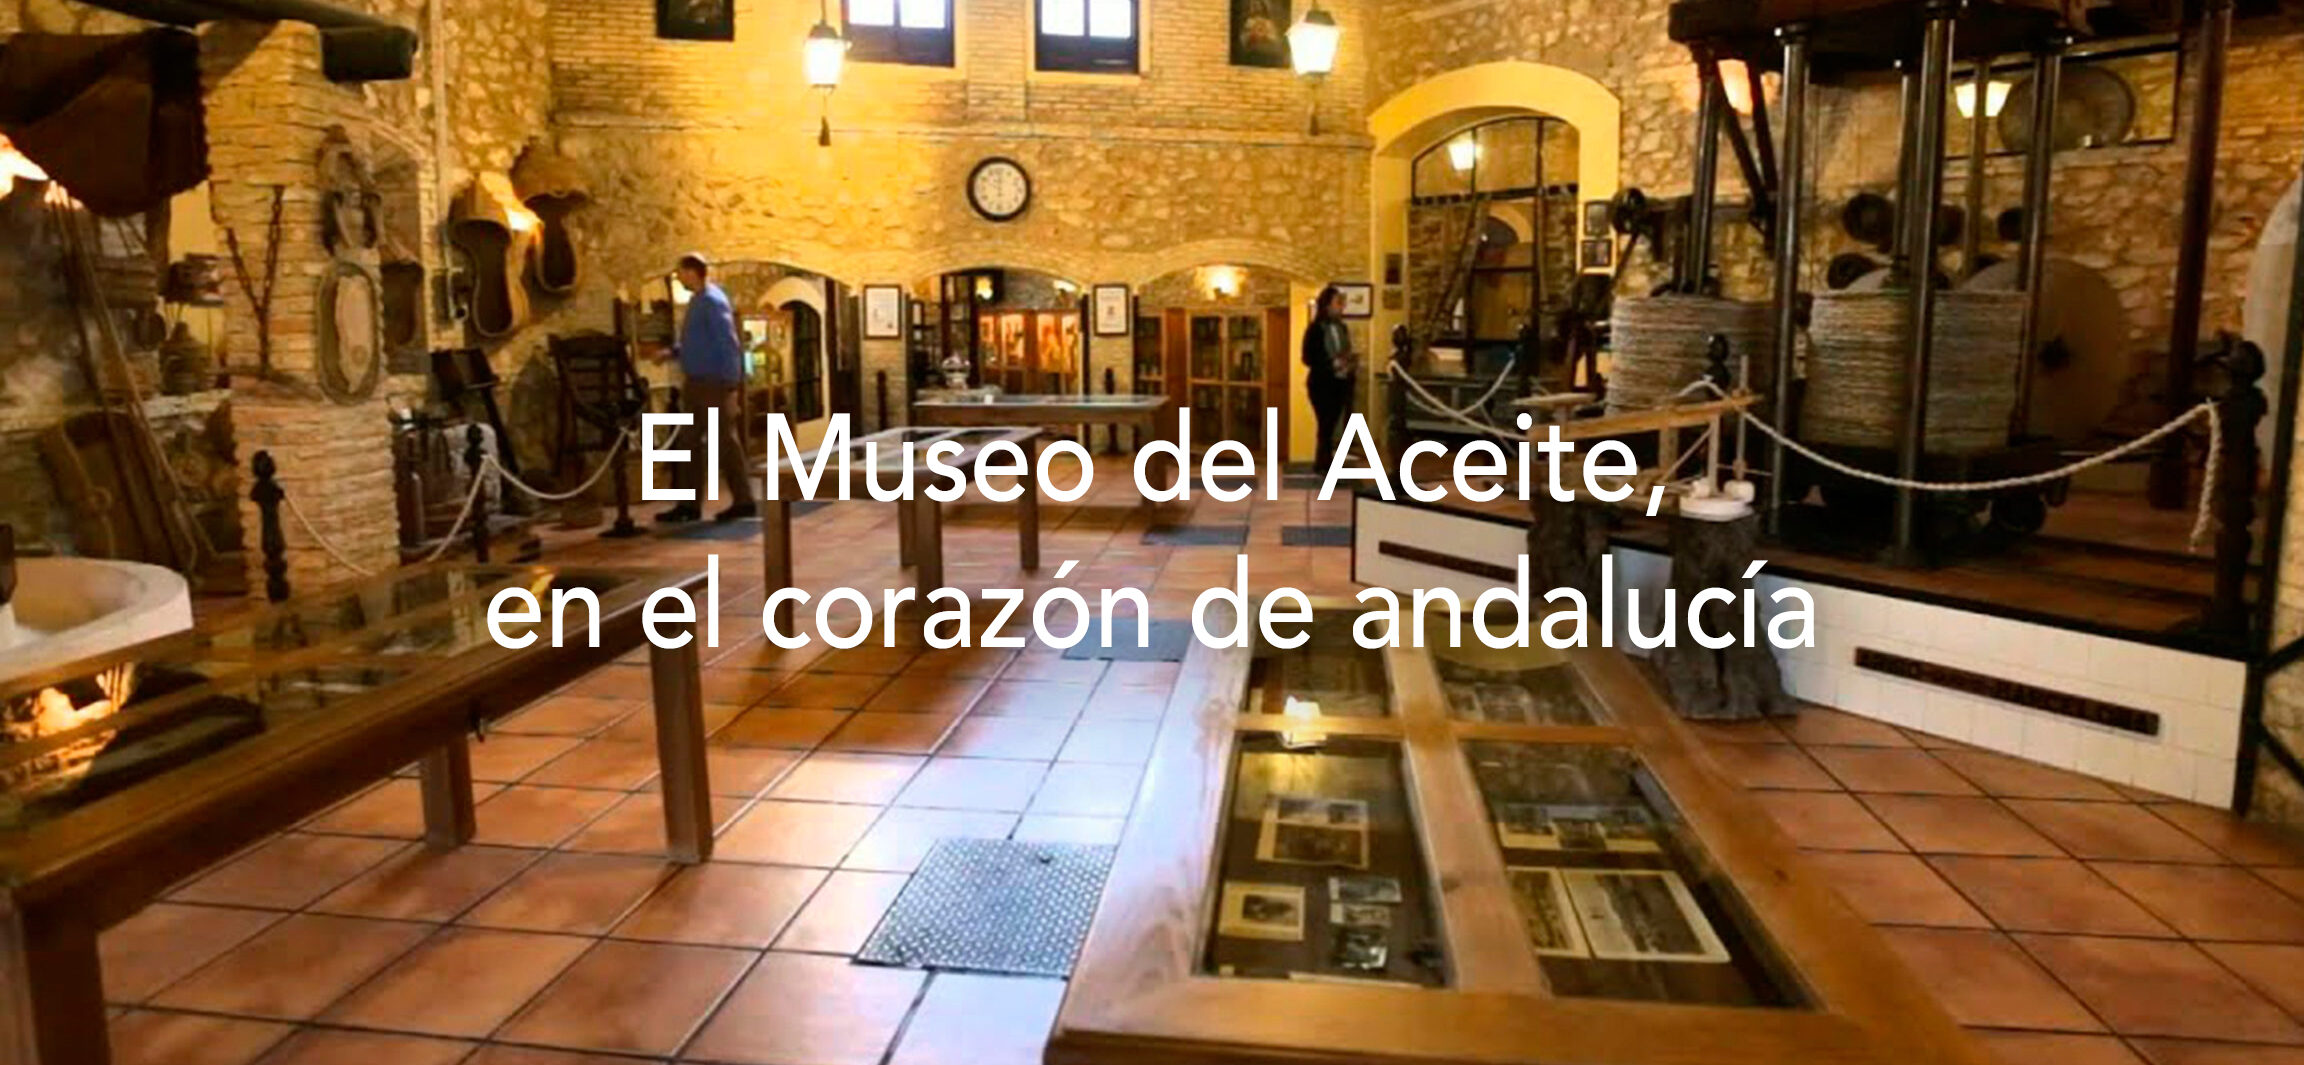 MUSEO DEL ACEITE DE OLIVA		Cabra	Córdoba